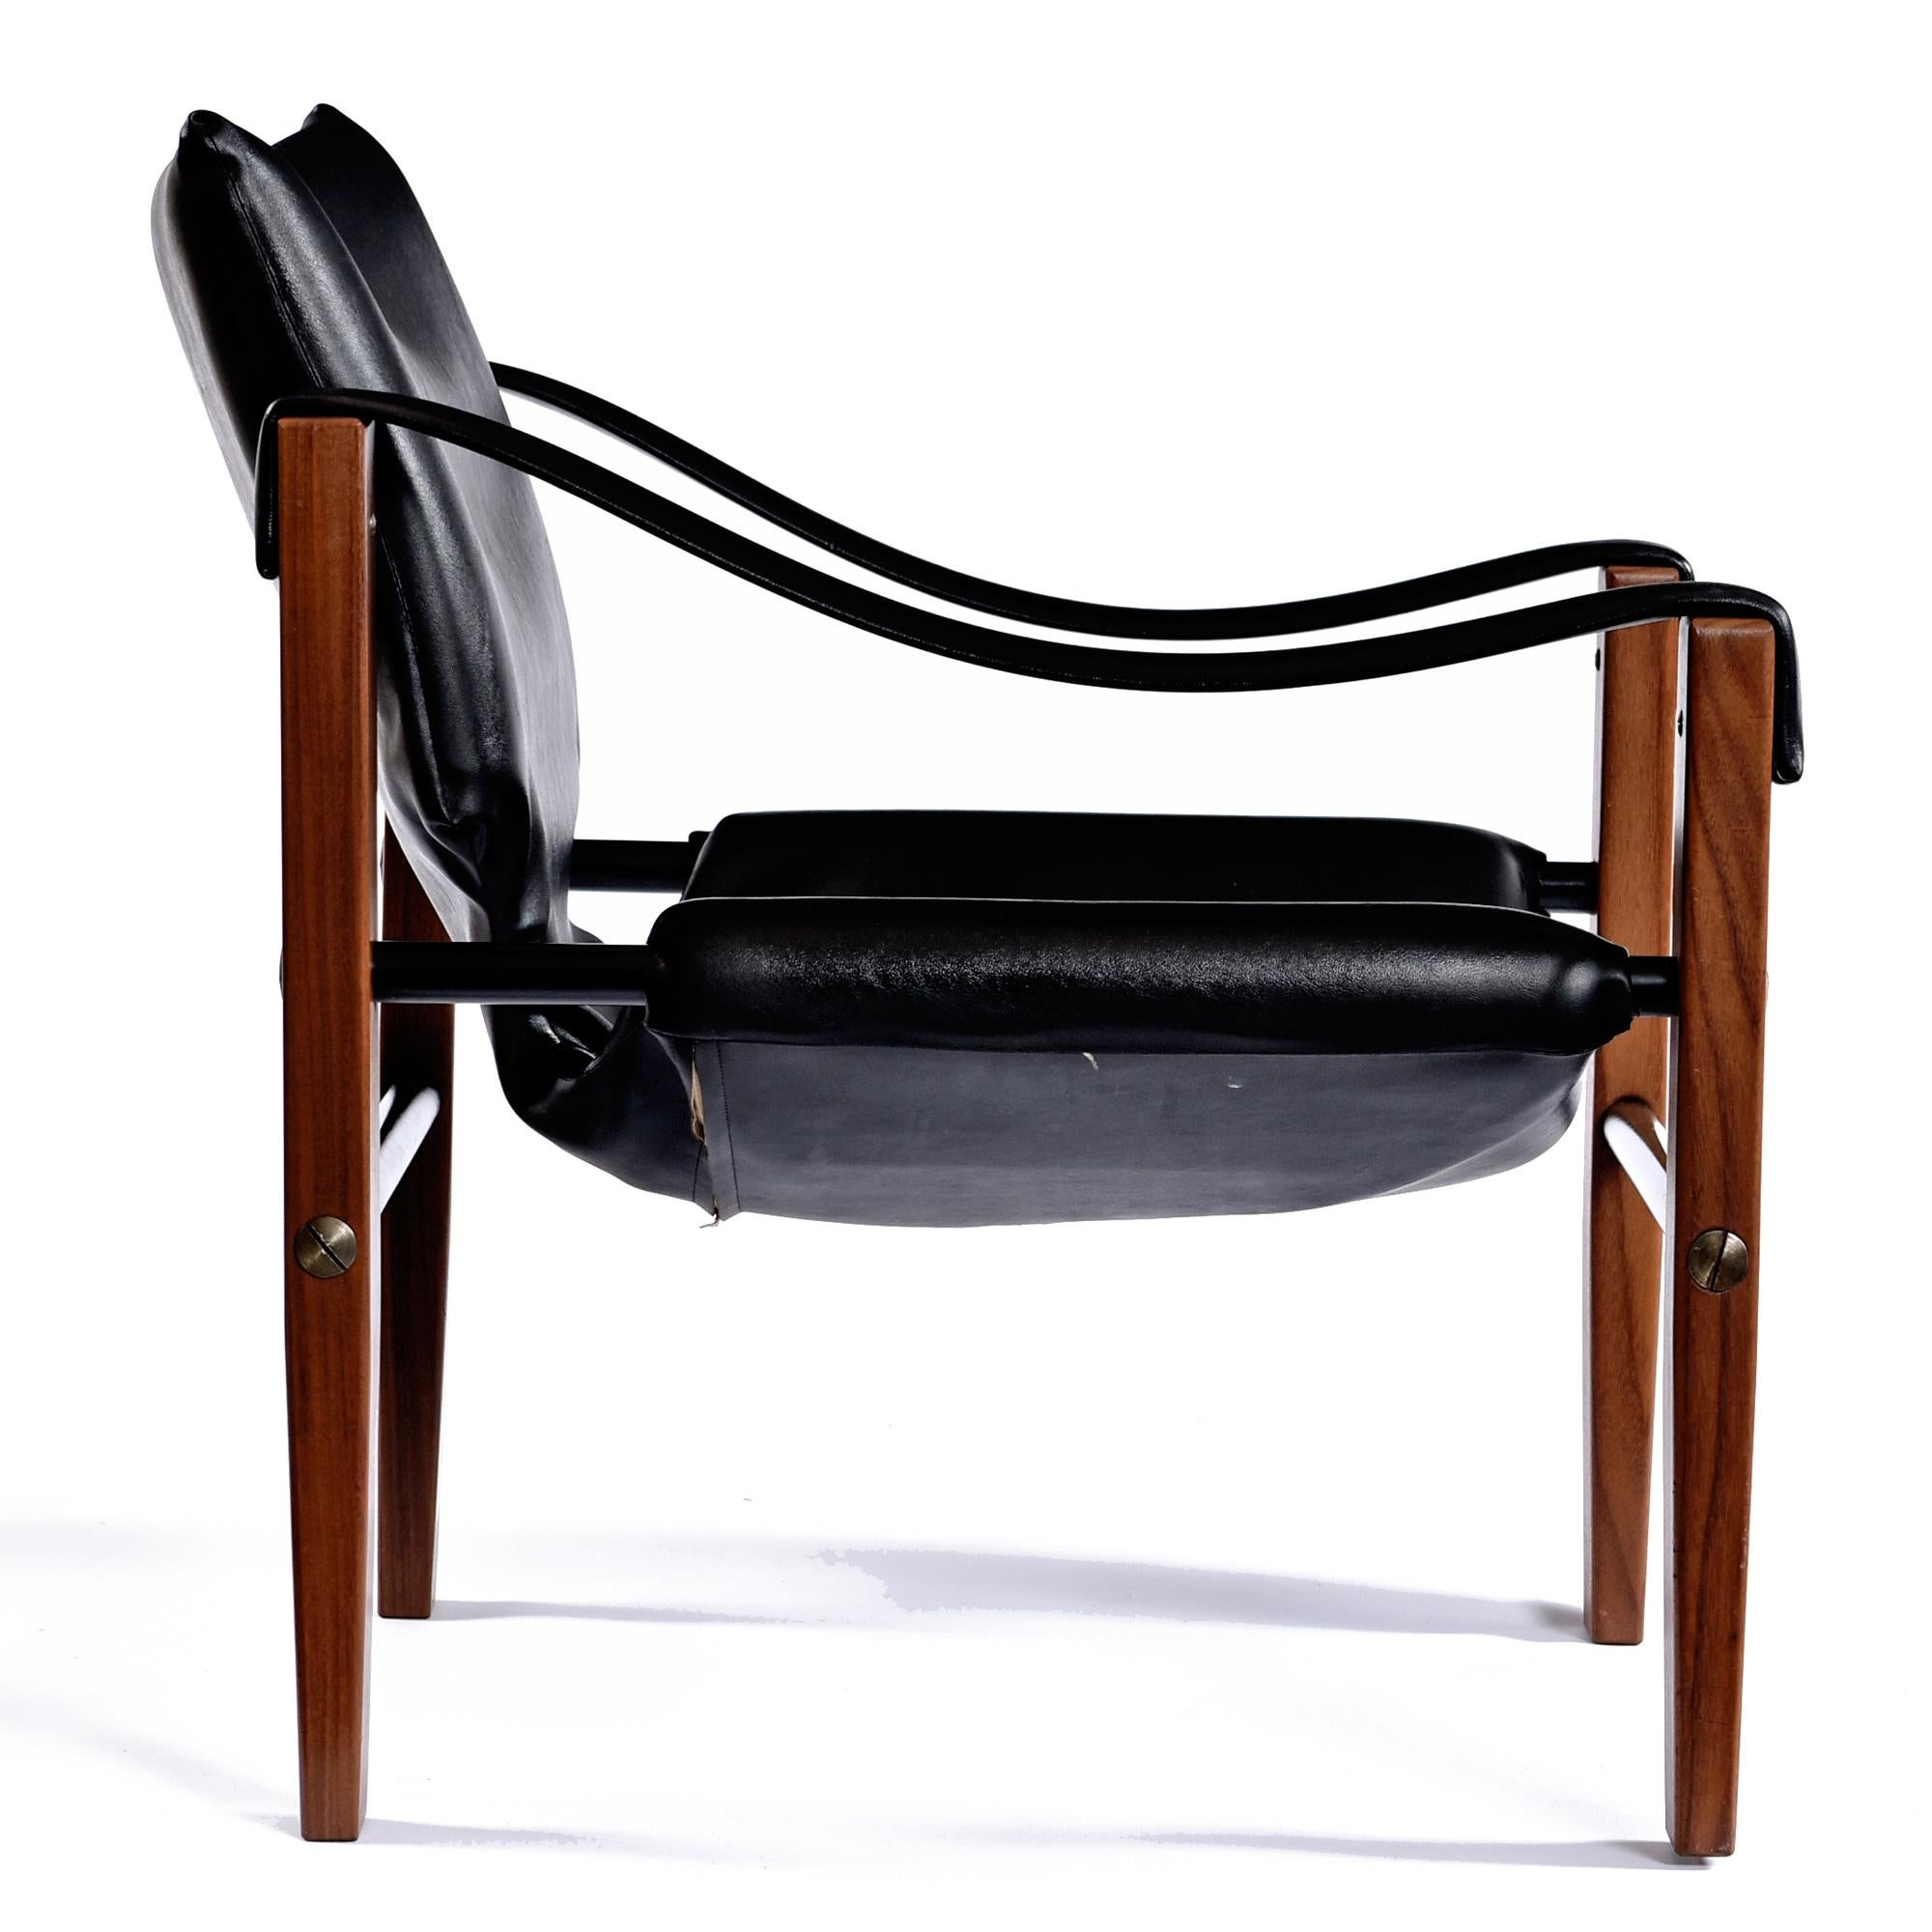 Klassischer und ikonischer Chelsea Safari Chair, entworfen von Maurice Burke für Arkana Furniture in Schottland.  Das schwarze Originalleder steht in perfektem Kontrast zu dem rötlich patinierten Teakholzrahmen.   Schwarze Metallrohrspanner sorgen